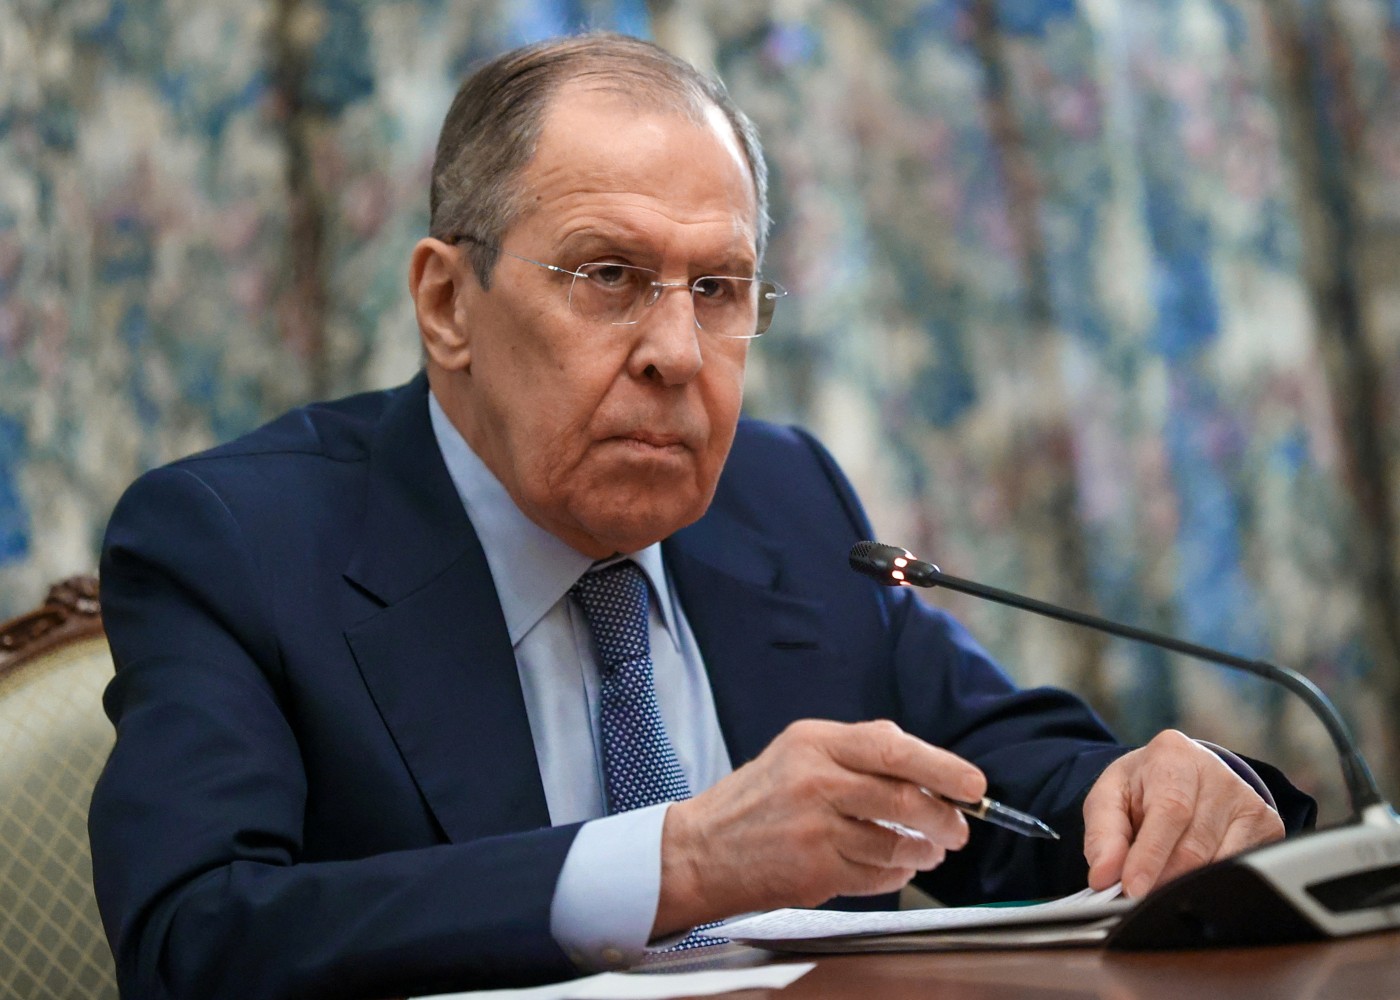 "Ermənistanda Rusiyanın təsirini sarsıtmağa çalışan güclü lobbi var"- Lavrov